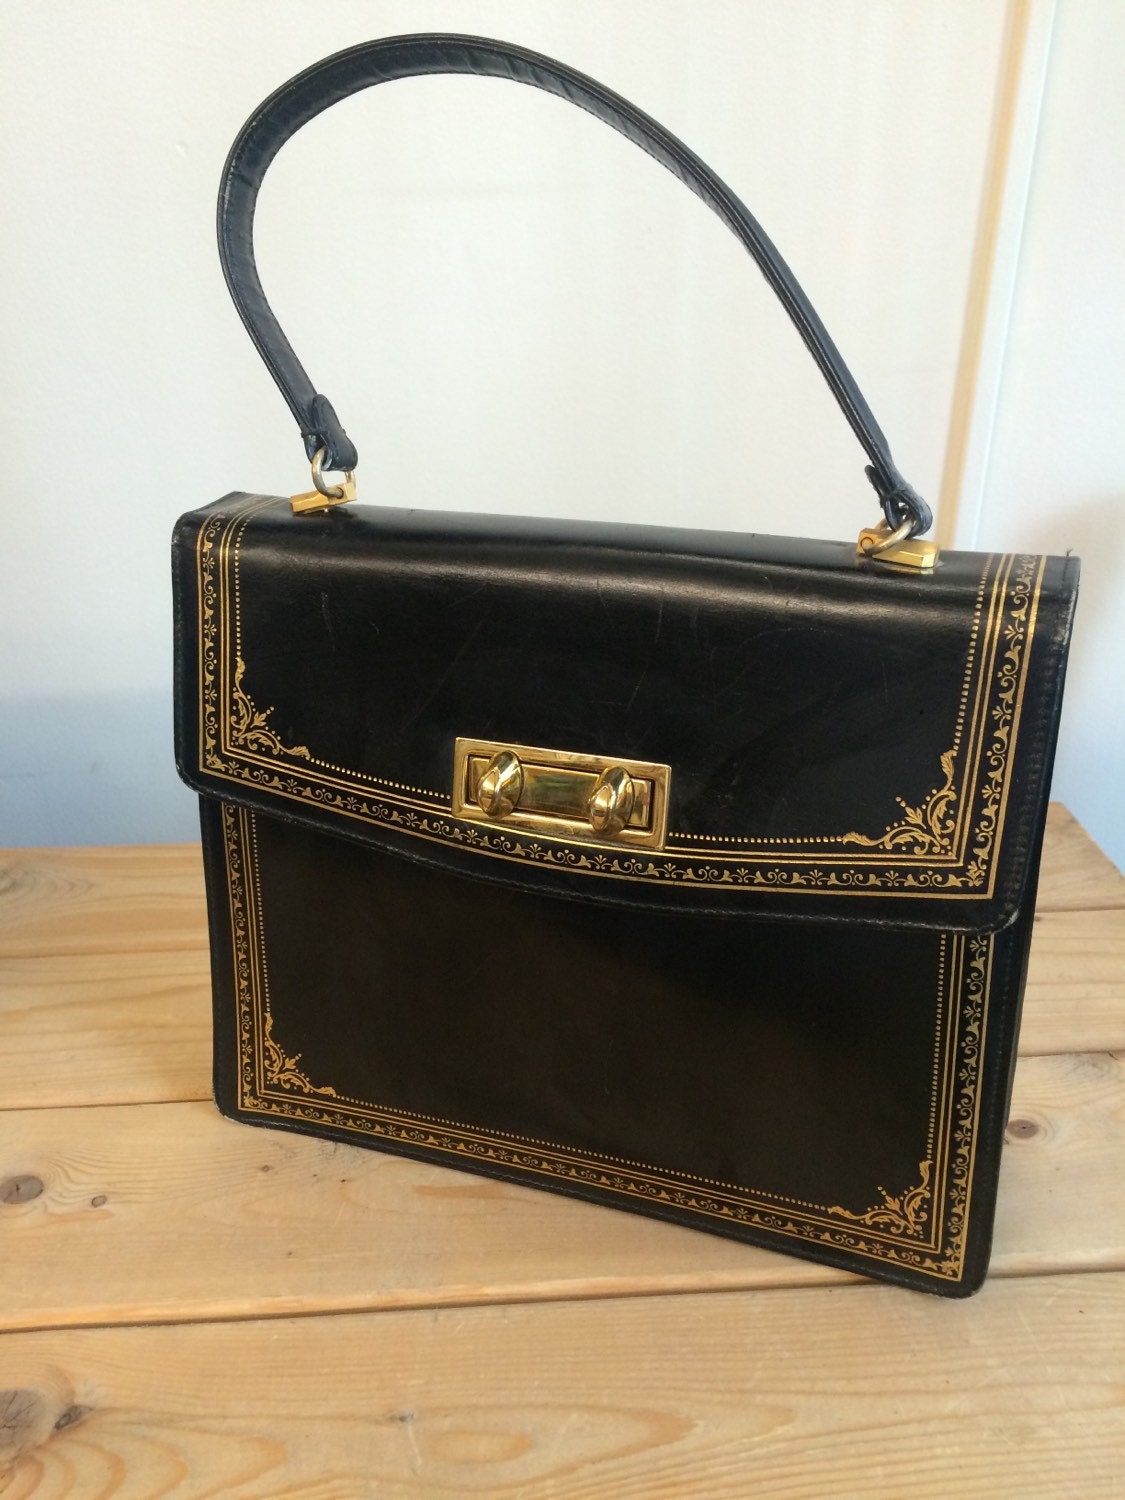 60s Black Leather Purse. Italian Leather Vintage Handbag with